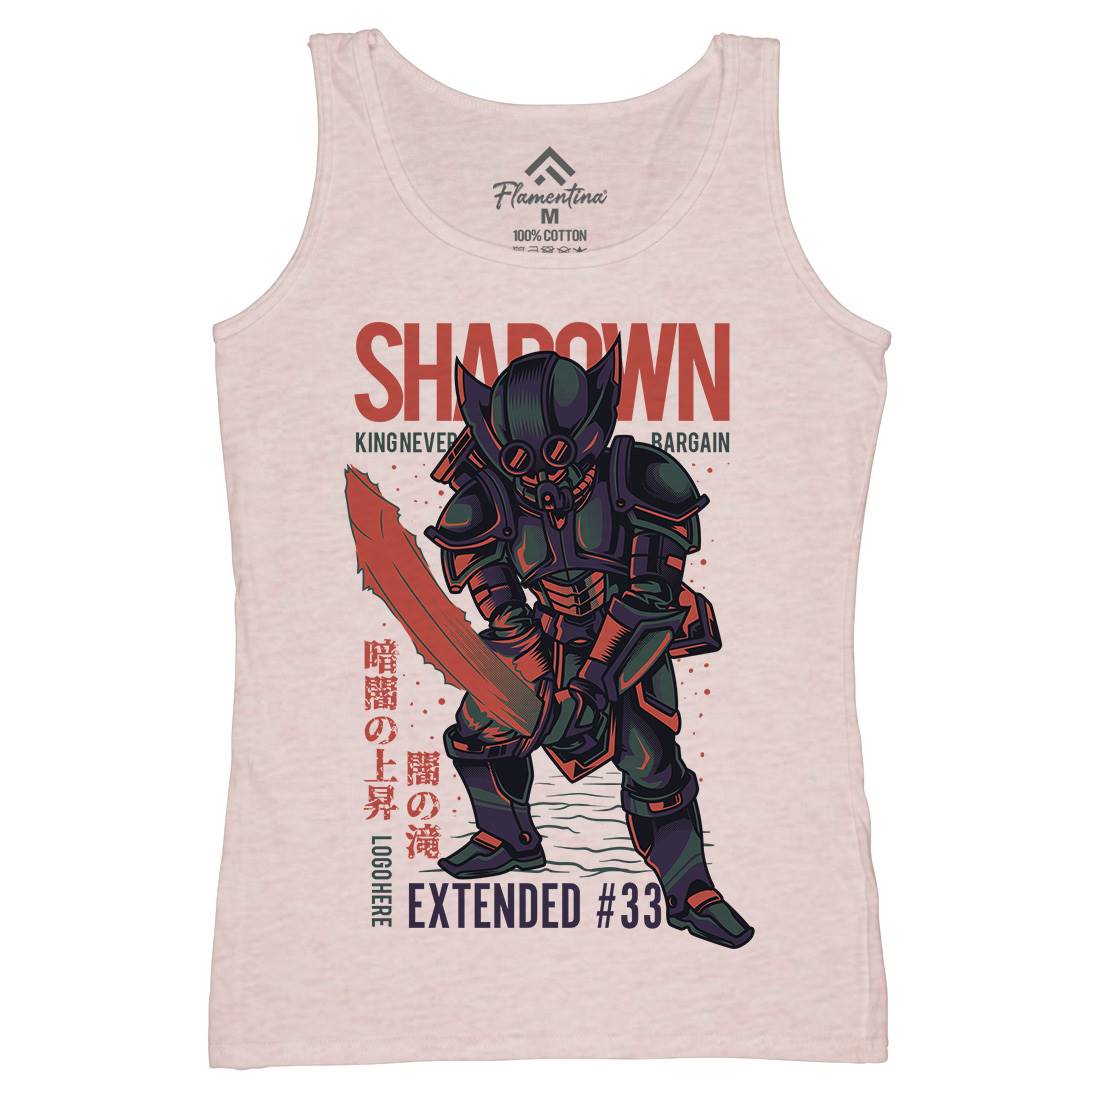 Shadown Knight Womens Organic Tank Top Vest Warriors D812